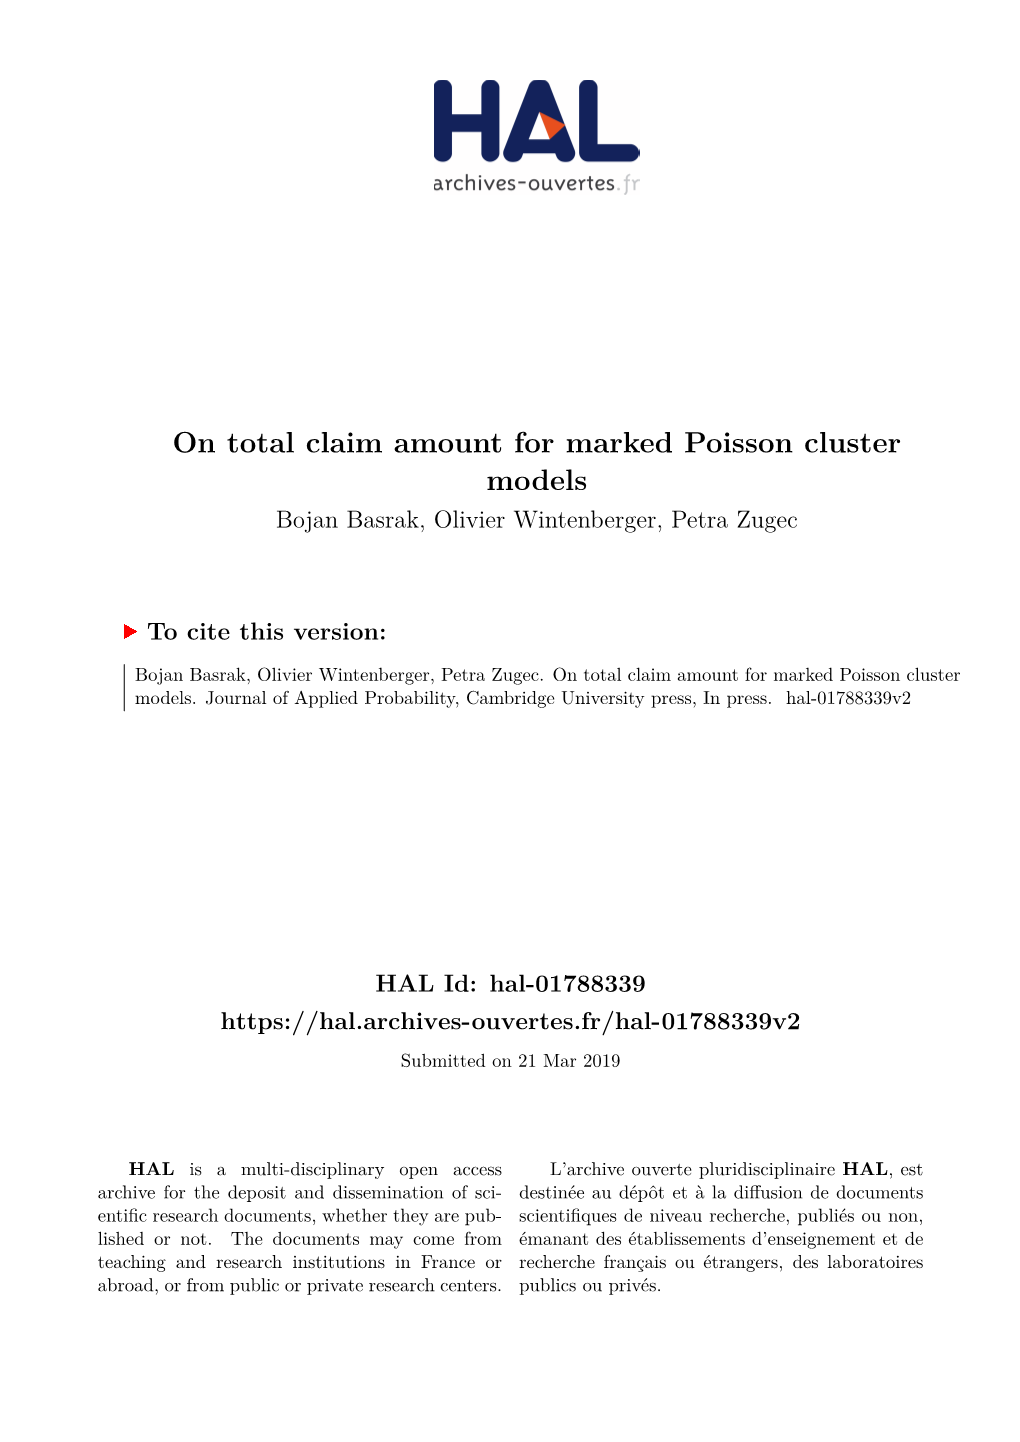 On Total Claim Amount for Marked Poisson Cluster Models Bojan Basrak, Olivier Wintenberger, Petra Zugec